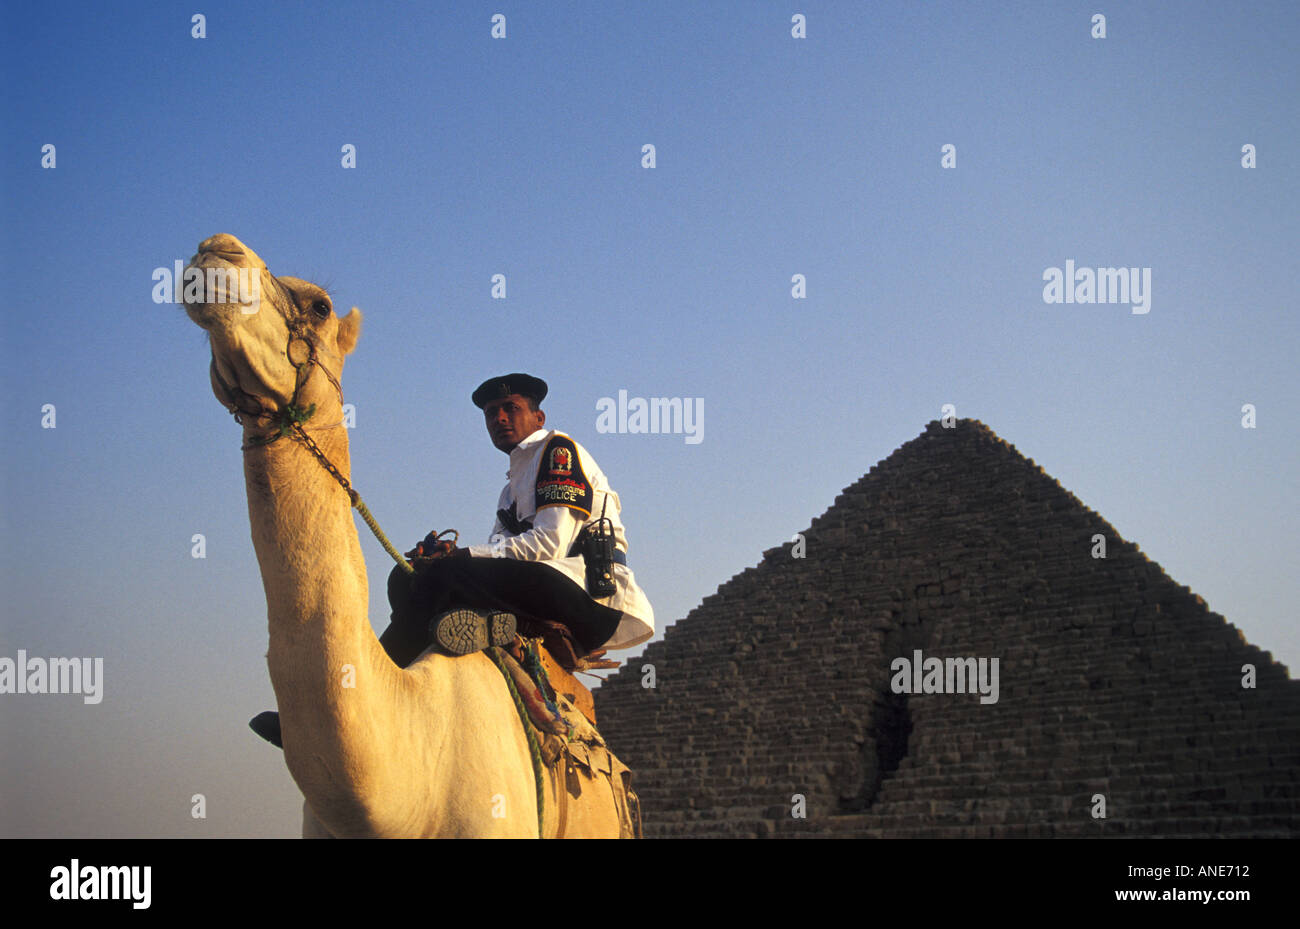 Police touristique sur Camel gardant les pyramides, Egypte Banque D'Images